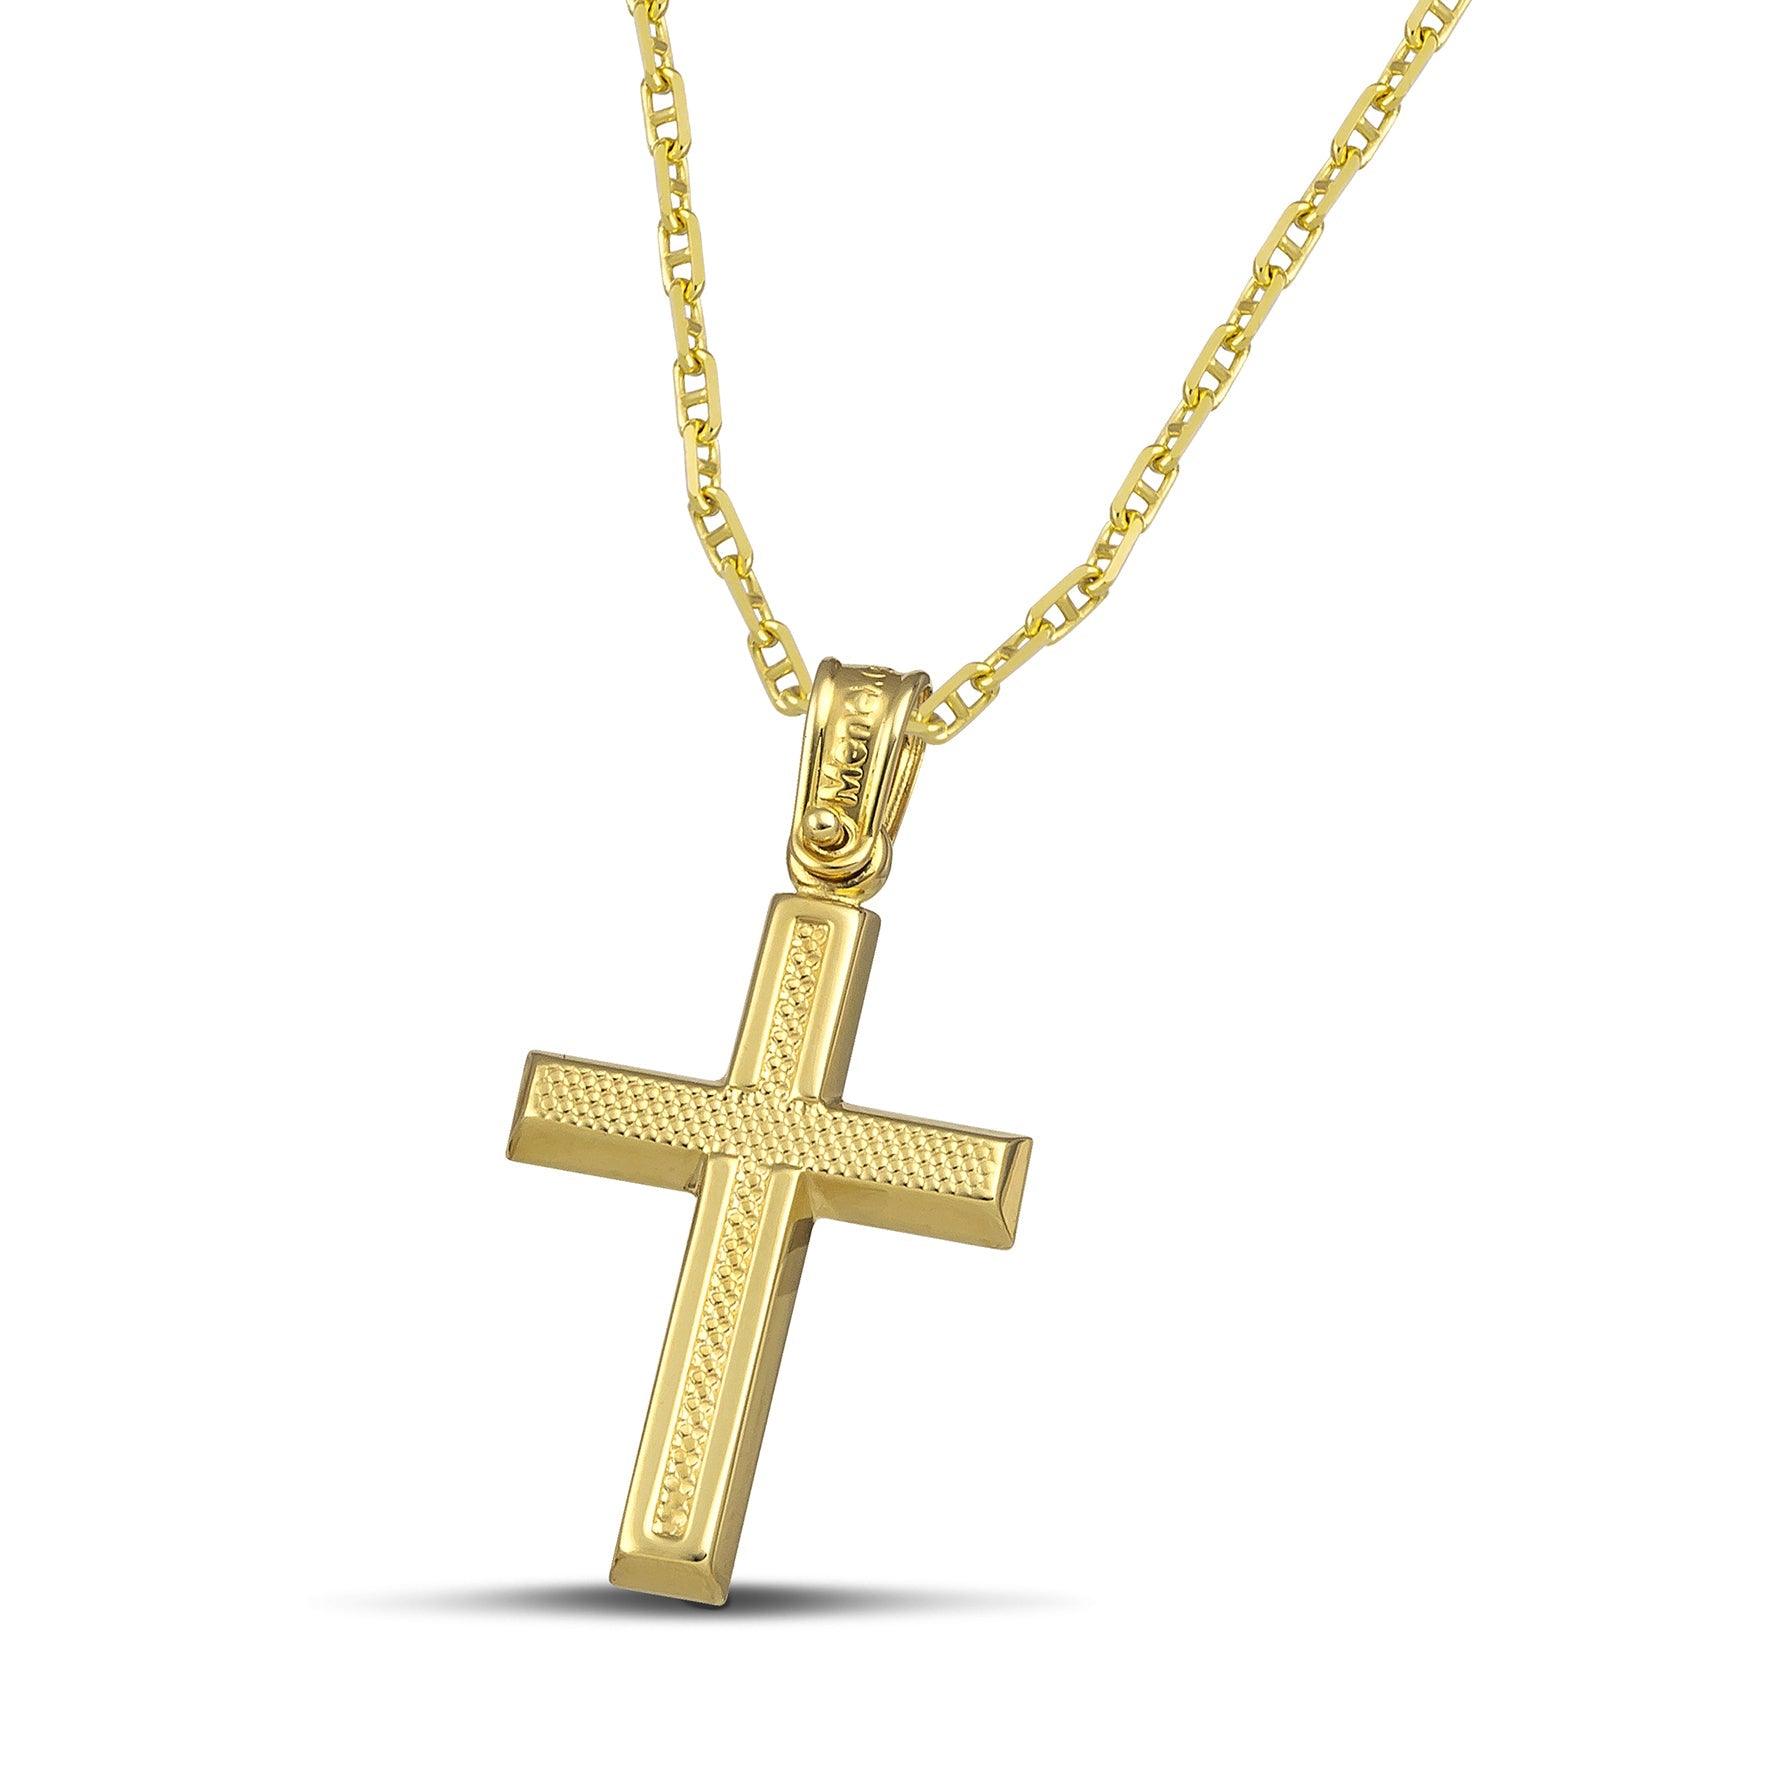 Μοντέρνος σταυρός για κορίτσι από χρυσό Κ14 ανάγλυφος. Φορεμένος σε «Θ» αλυσίδα.